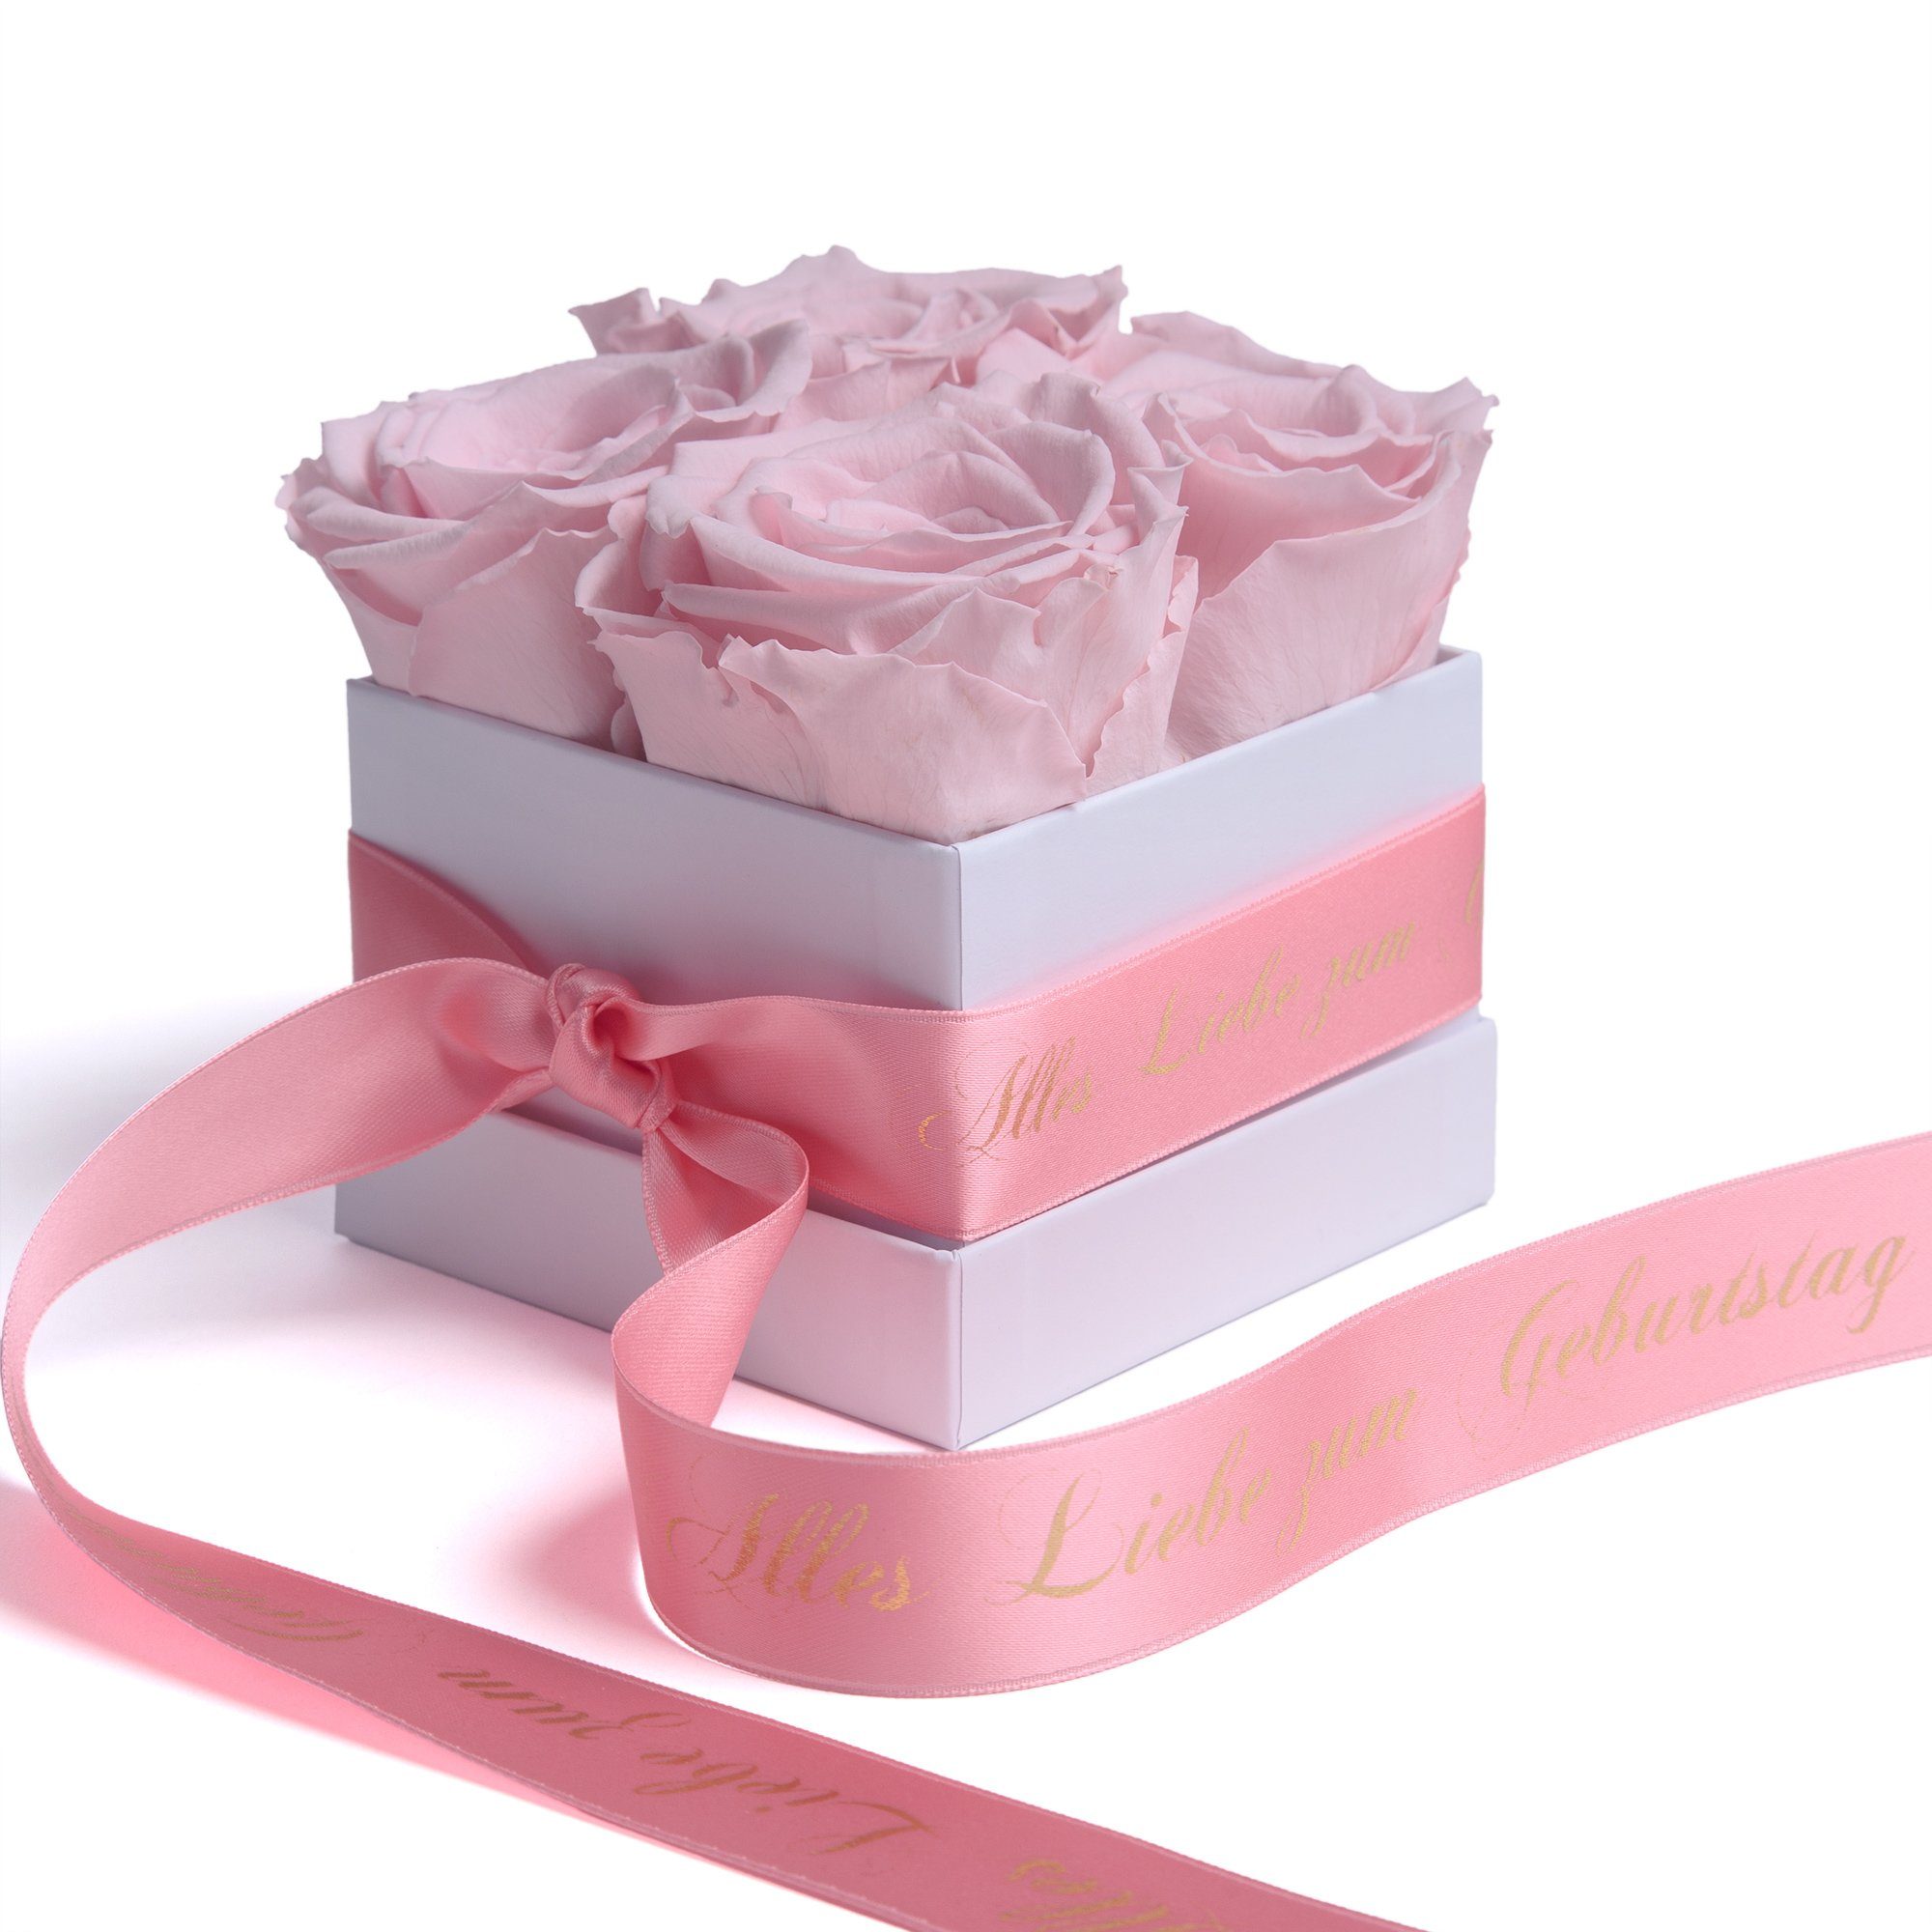 ROSEMARIE SCHULZ Heidelberg Echte Liebe Infinity Geschenk, Rosenbox zum Geburtstag Blumen Dekoobjekt 3 haltbar bis Jahre zu rosa Rose Alles